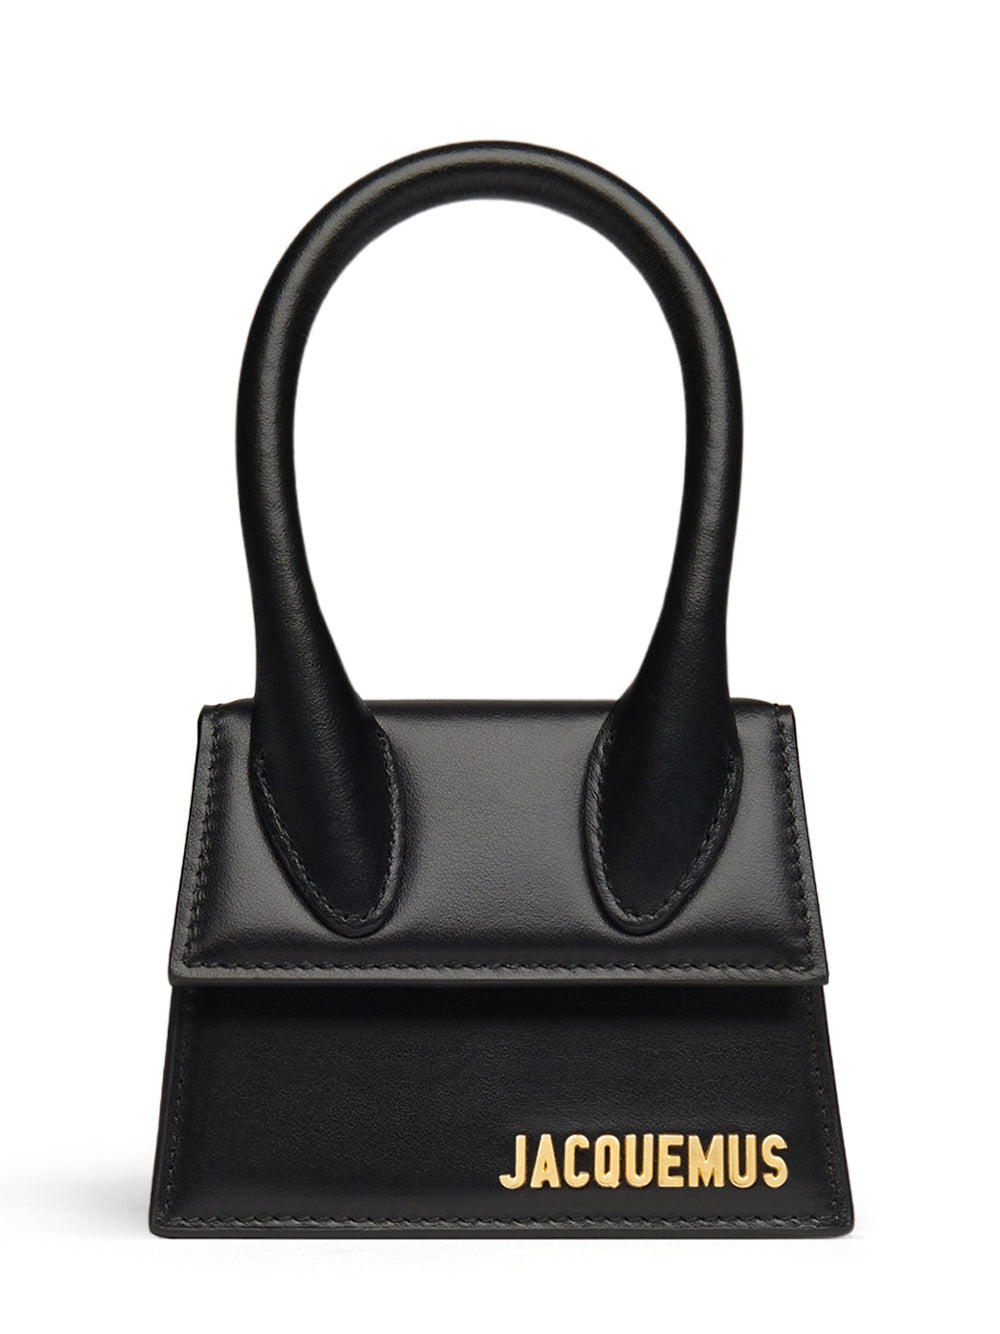 Jacquemus-LeChiquito-Black-1